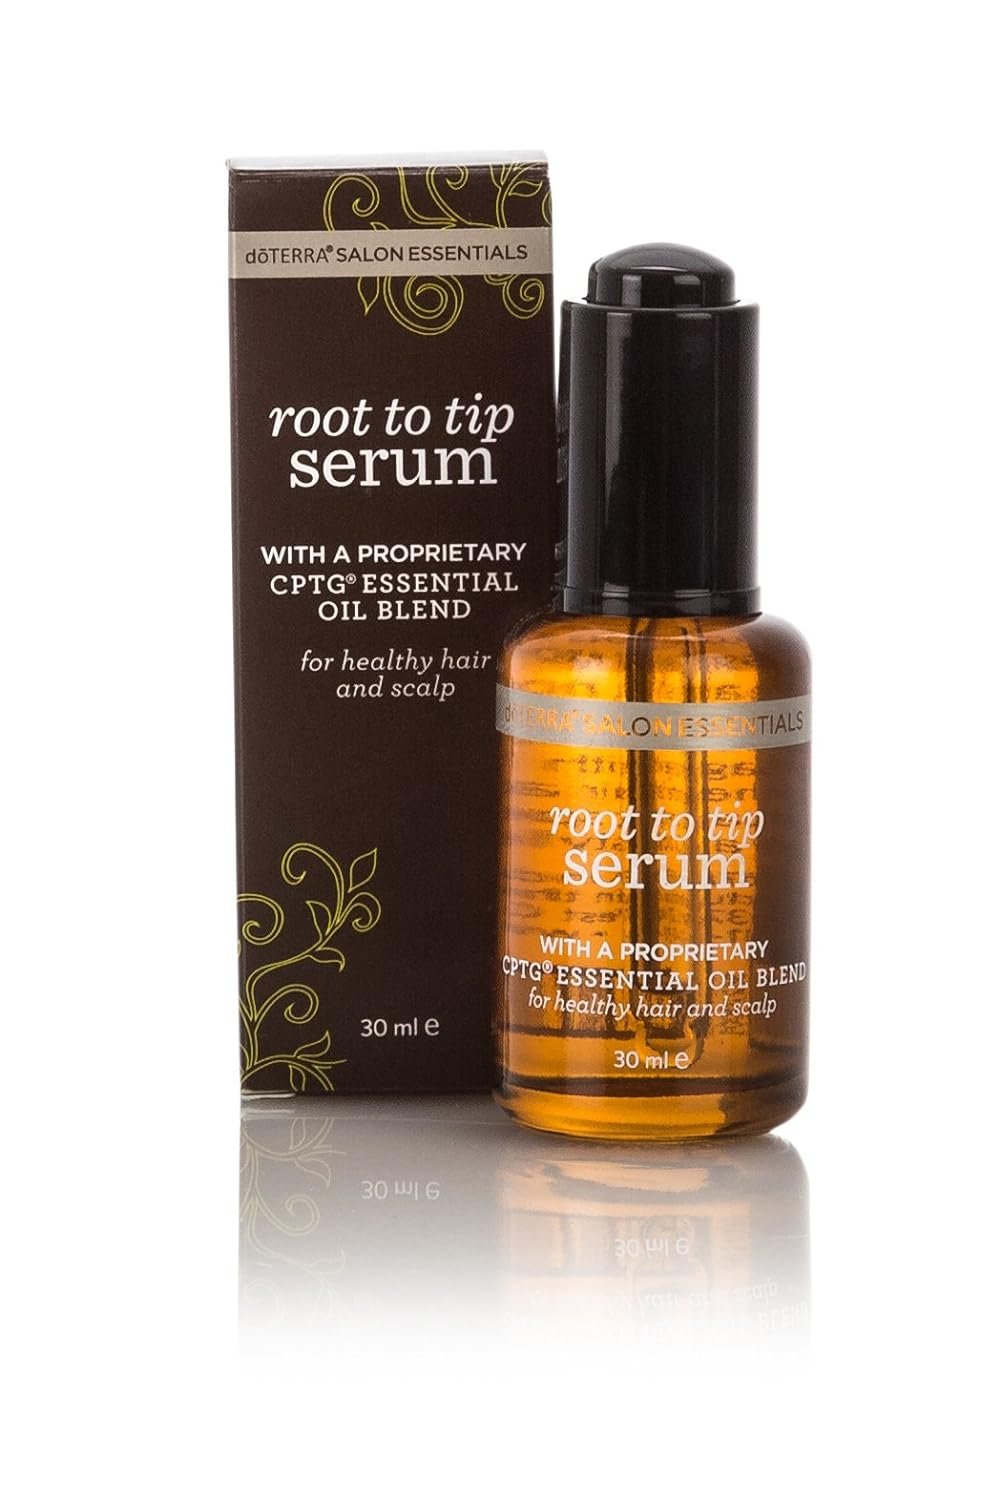 DoTerra – Salon Essentials Root to Tip Serum – 30 mL